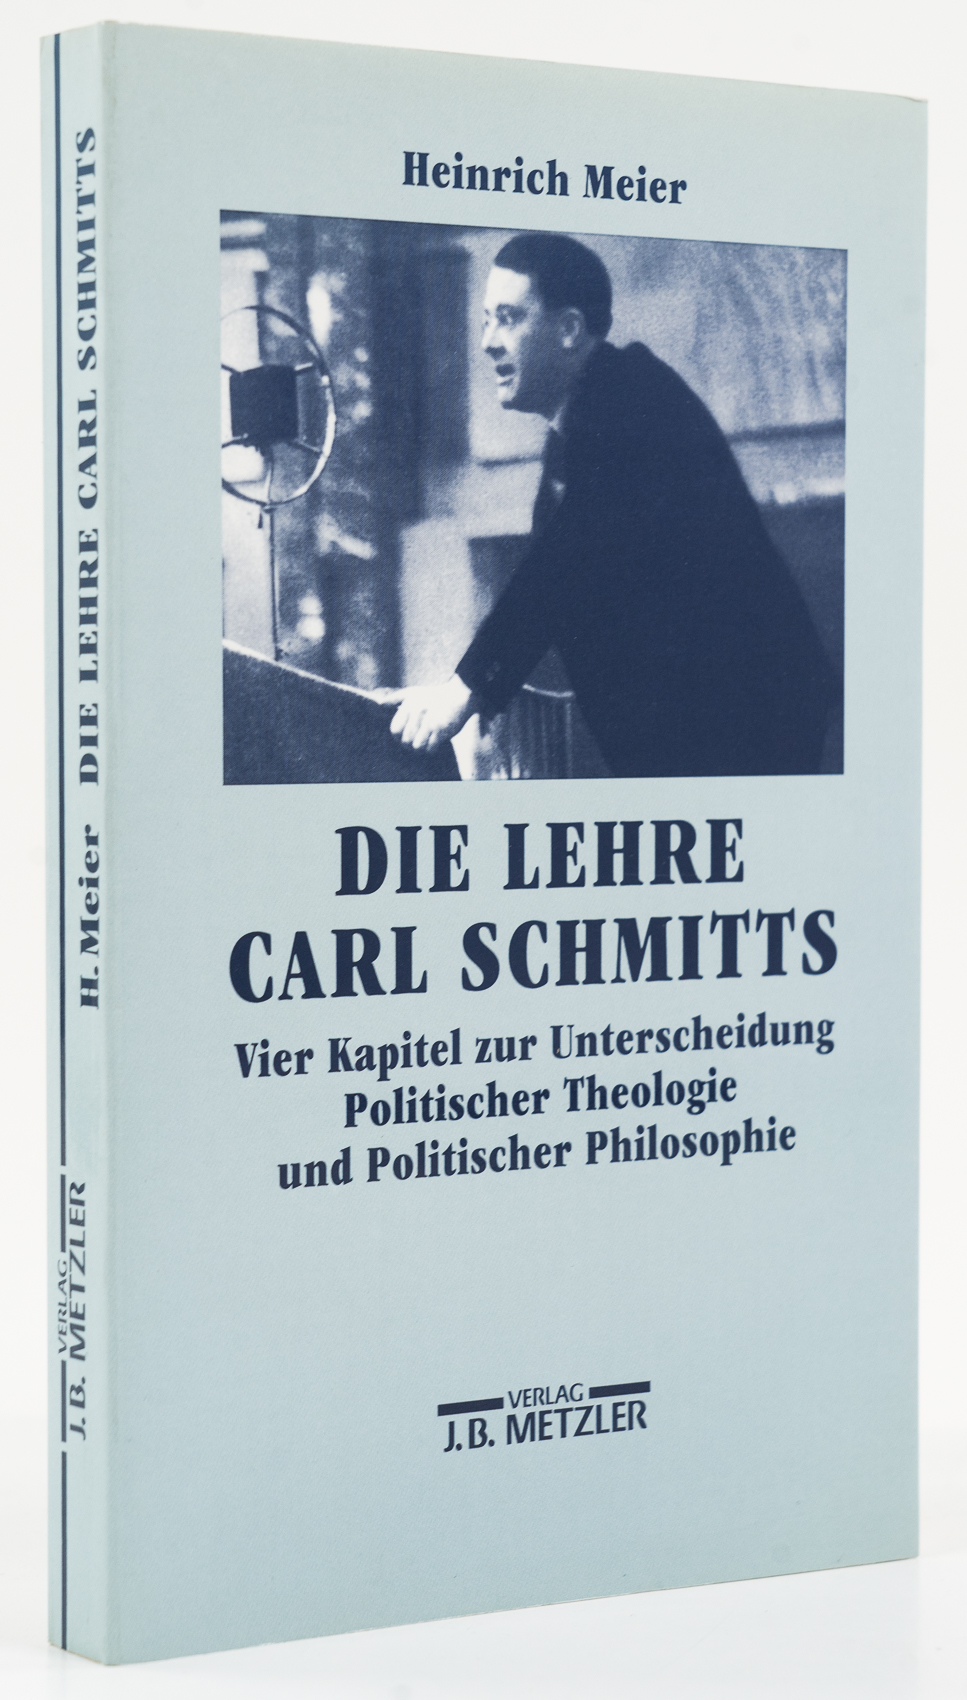 Die Lehre Carl Schmitts. Vier Kapitel zur Unterscheidung Politischer Theologie und Politischer Philosophie. - - Meier, Heinrich